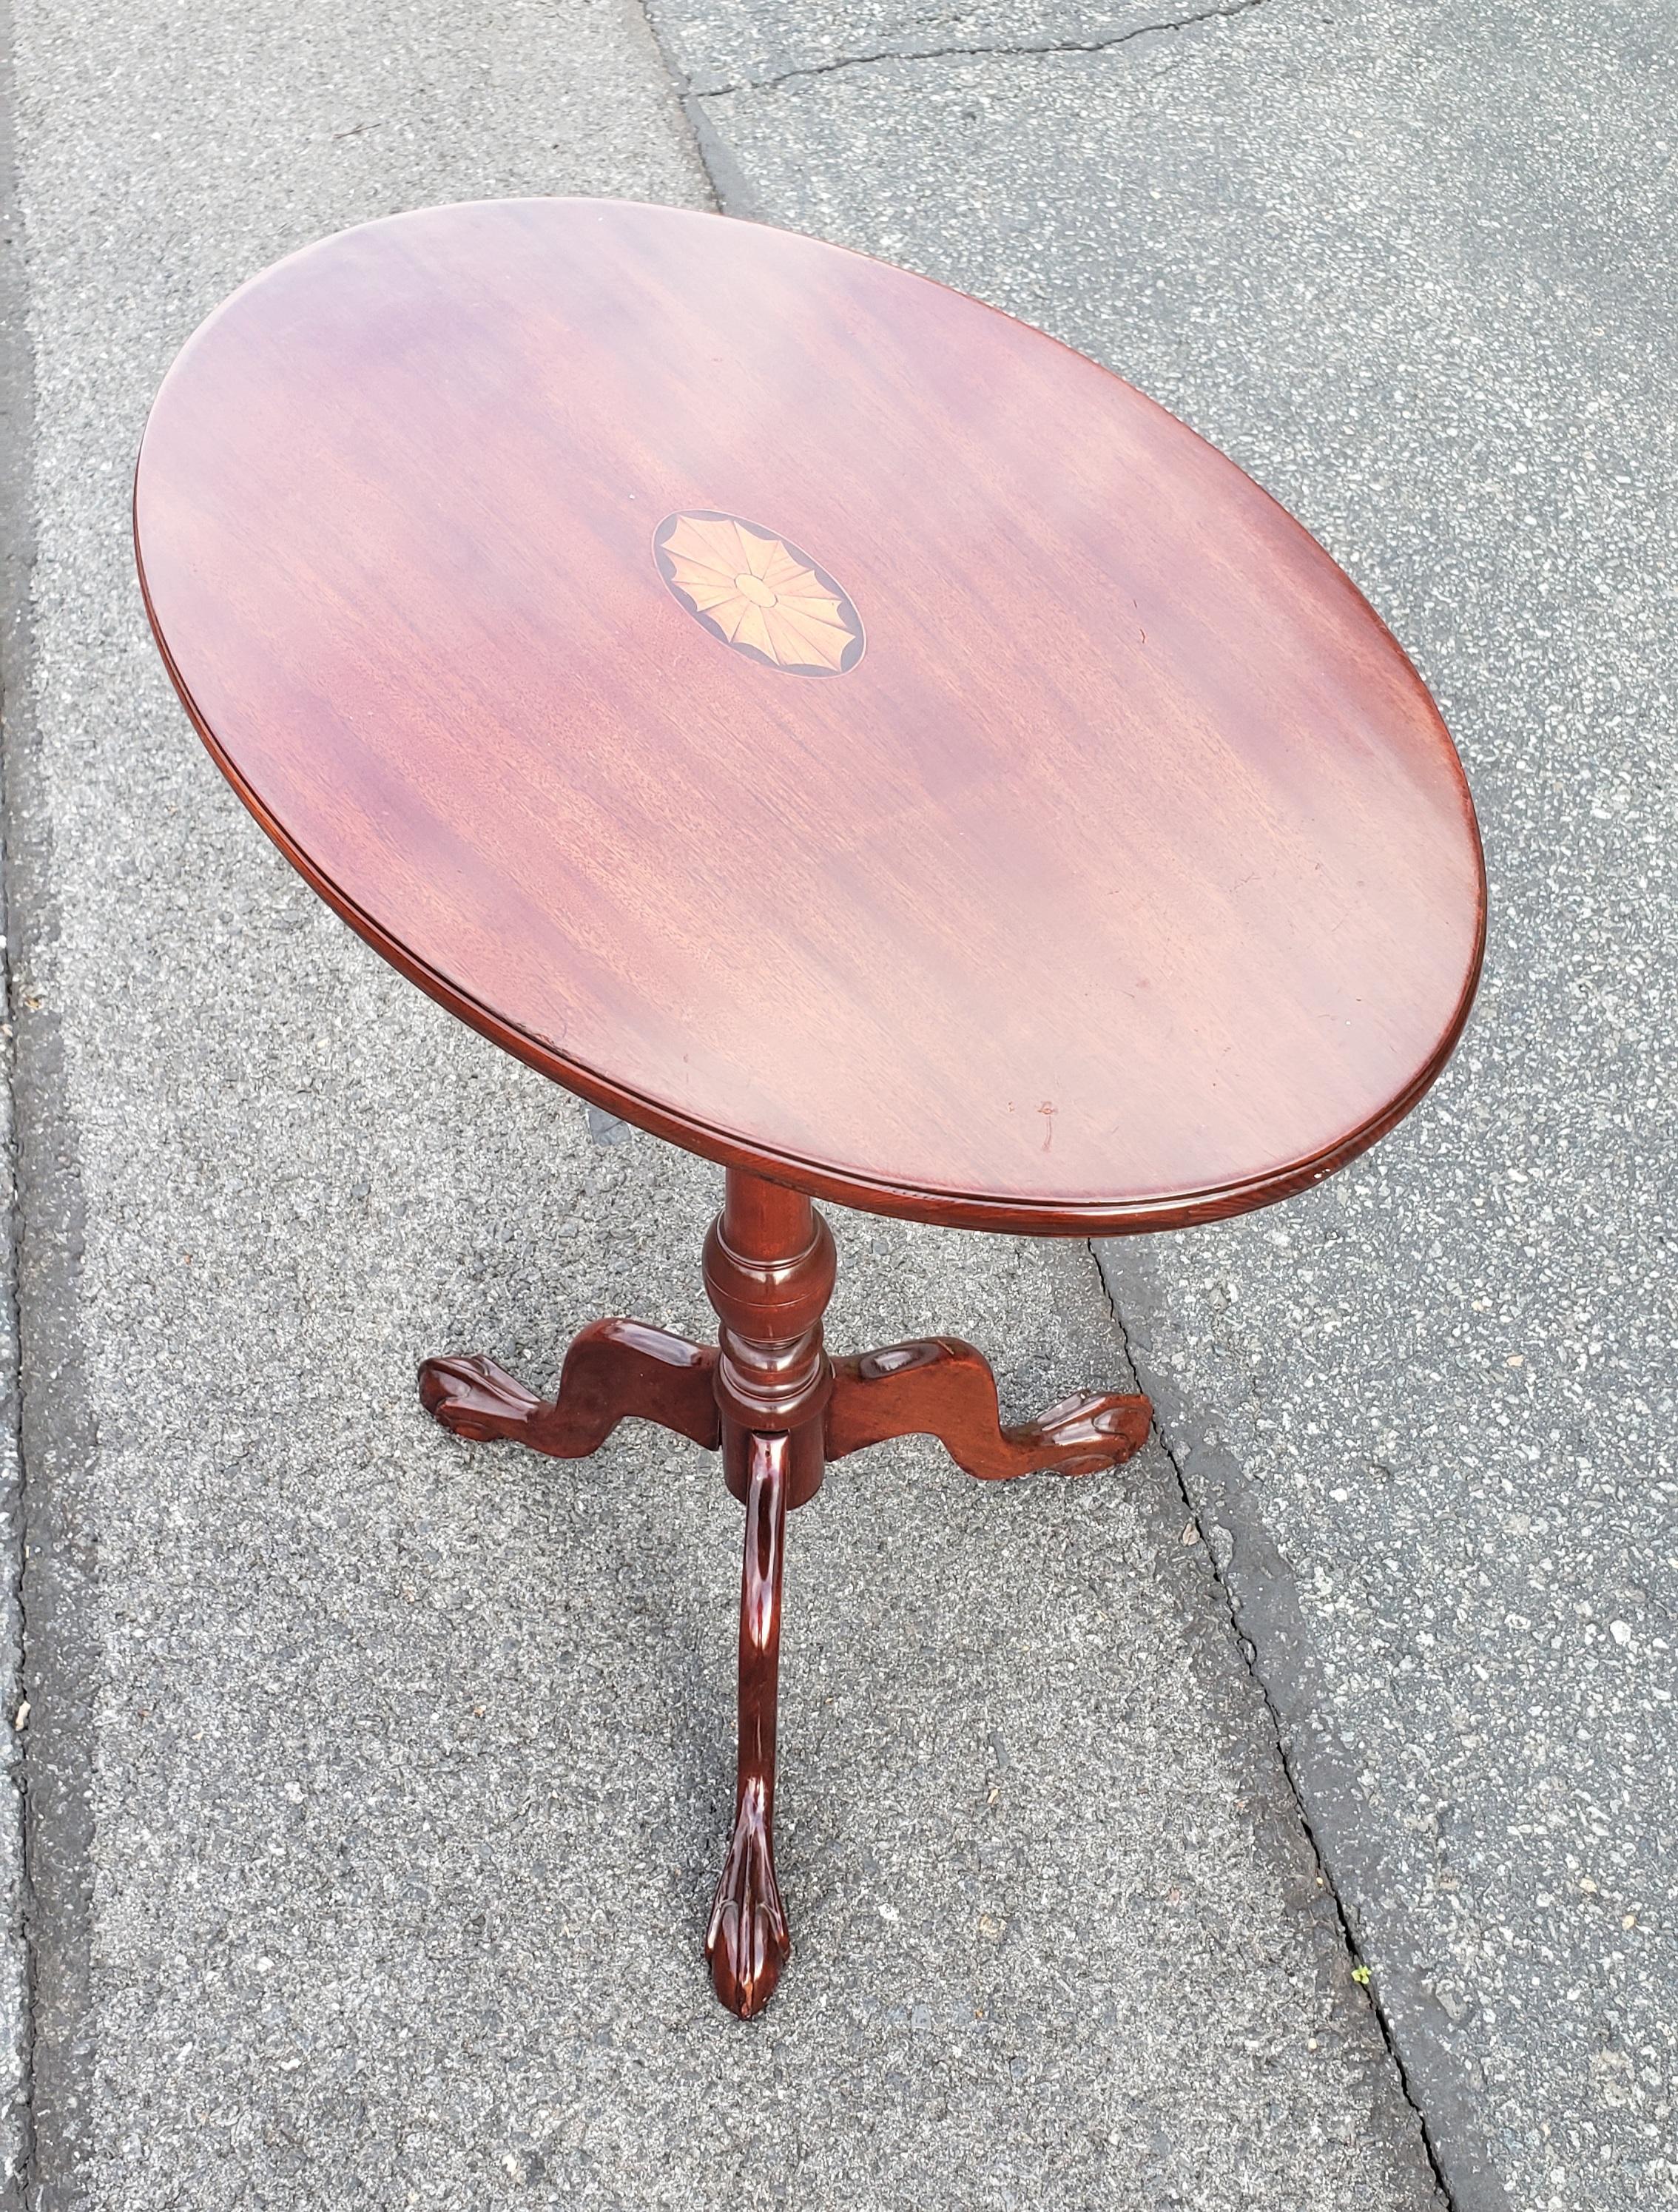 Mahagoni Intarsien Tilt-Top Tea Table Beistelltisch mit Tripod Klauenfüße in sehr gutem Vintage-Zustand.
Der Tisch misst 26,5